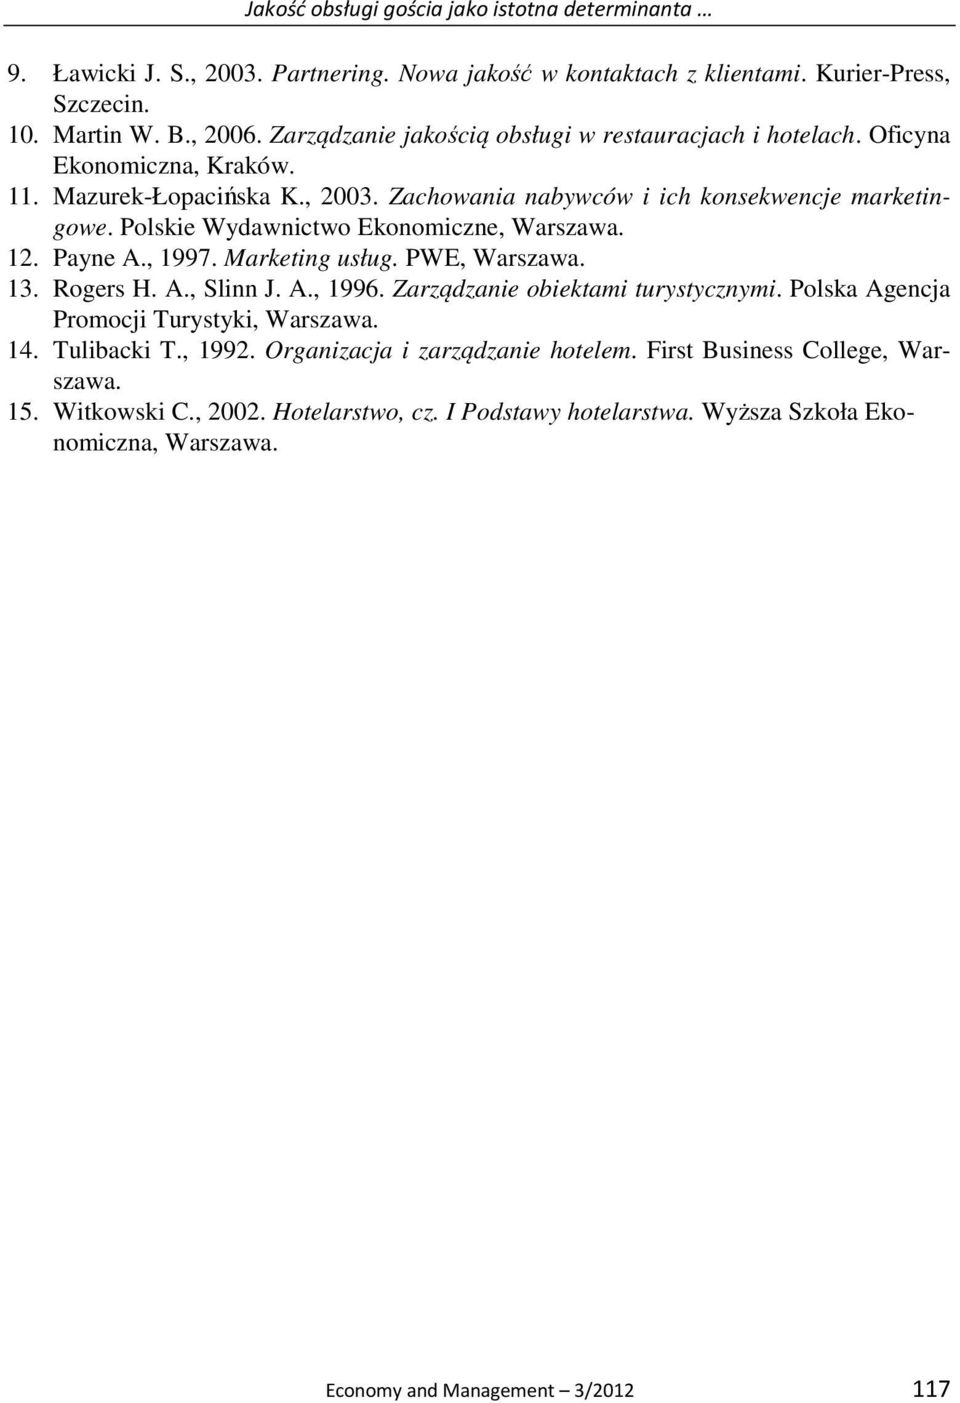 Polskie Wydawnictwo Ekonomiczne, Warszawa. 12. Payne A., 1997. Marketing usług. PWE, Warszawa. 13. Rogers H. A., Slinn J. A., 1996. Zarządzanie obiektami turystycznymi.